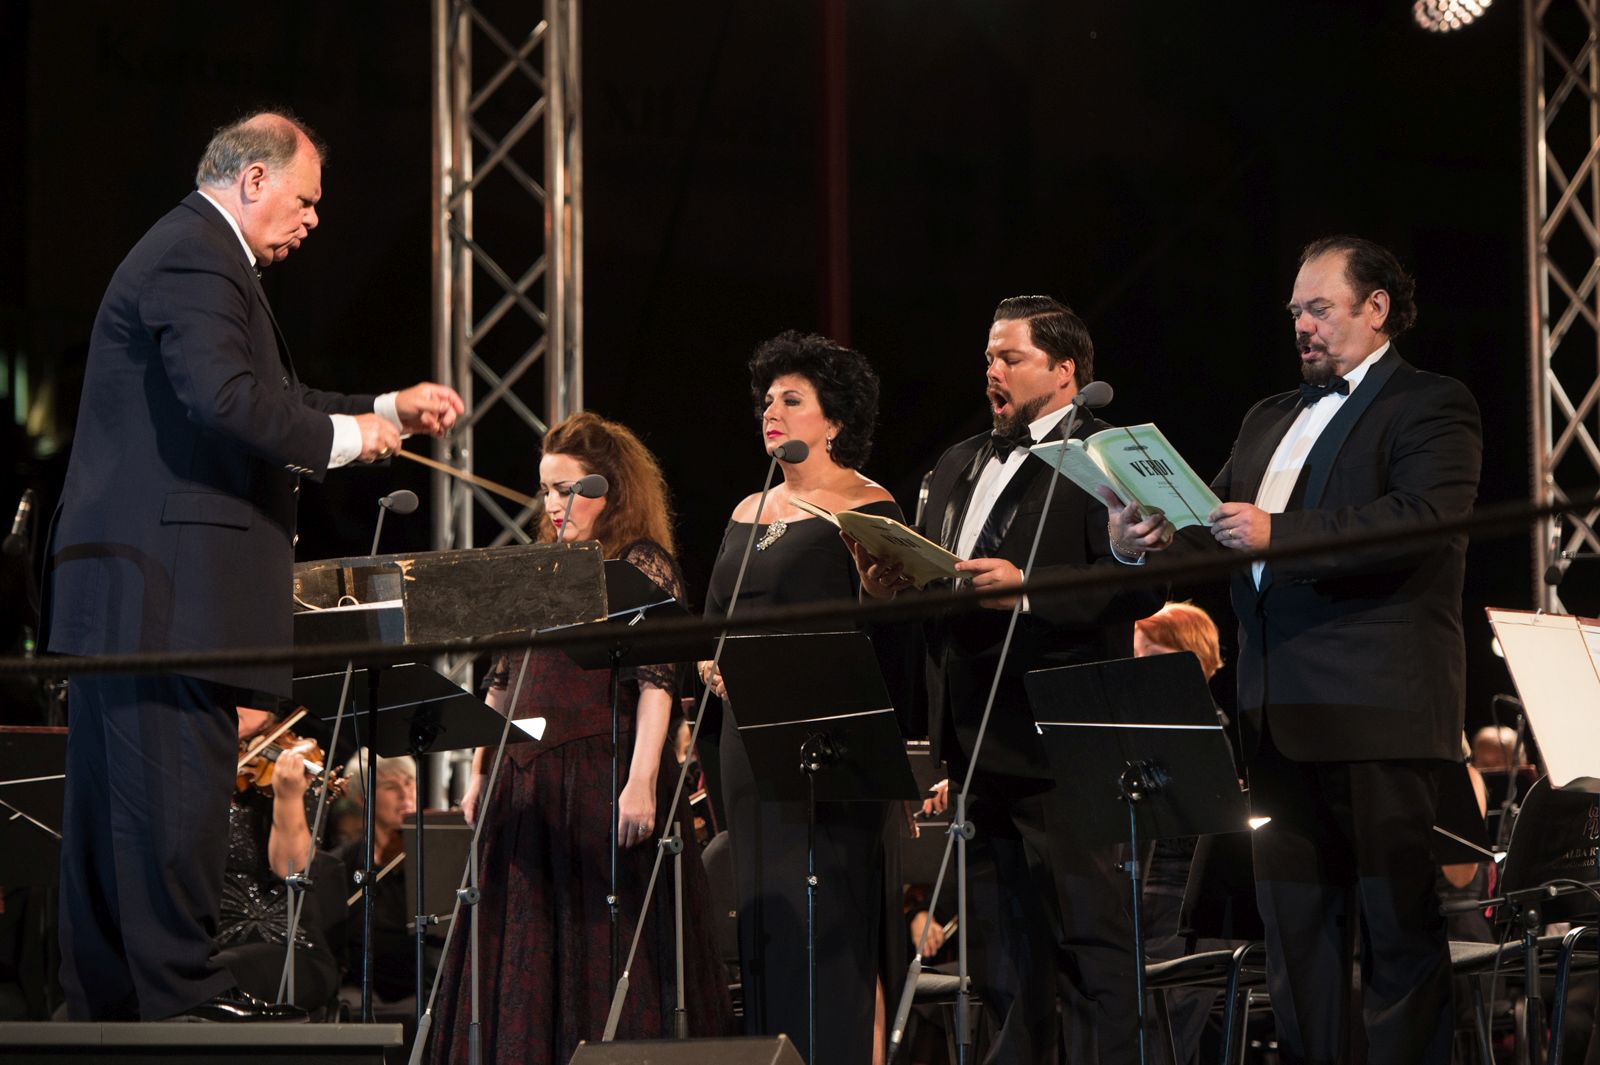 Világhírű szólistákkal csendült fel Verdi műve a Musica Sacra koncerten